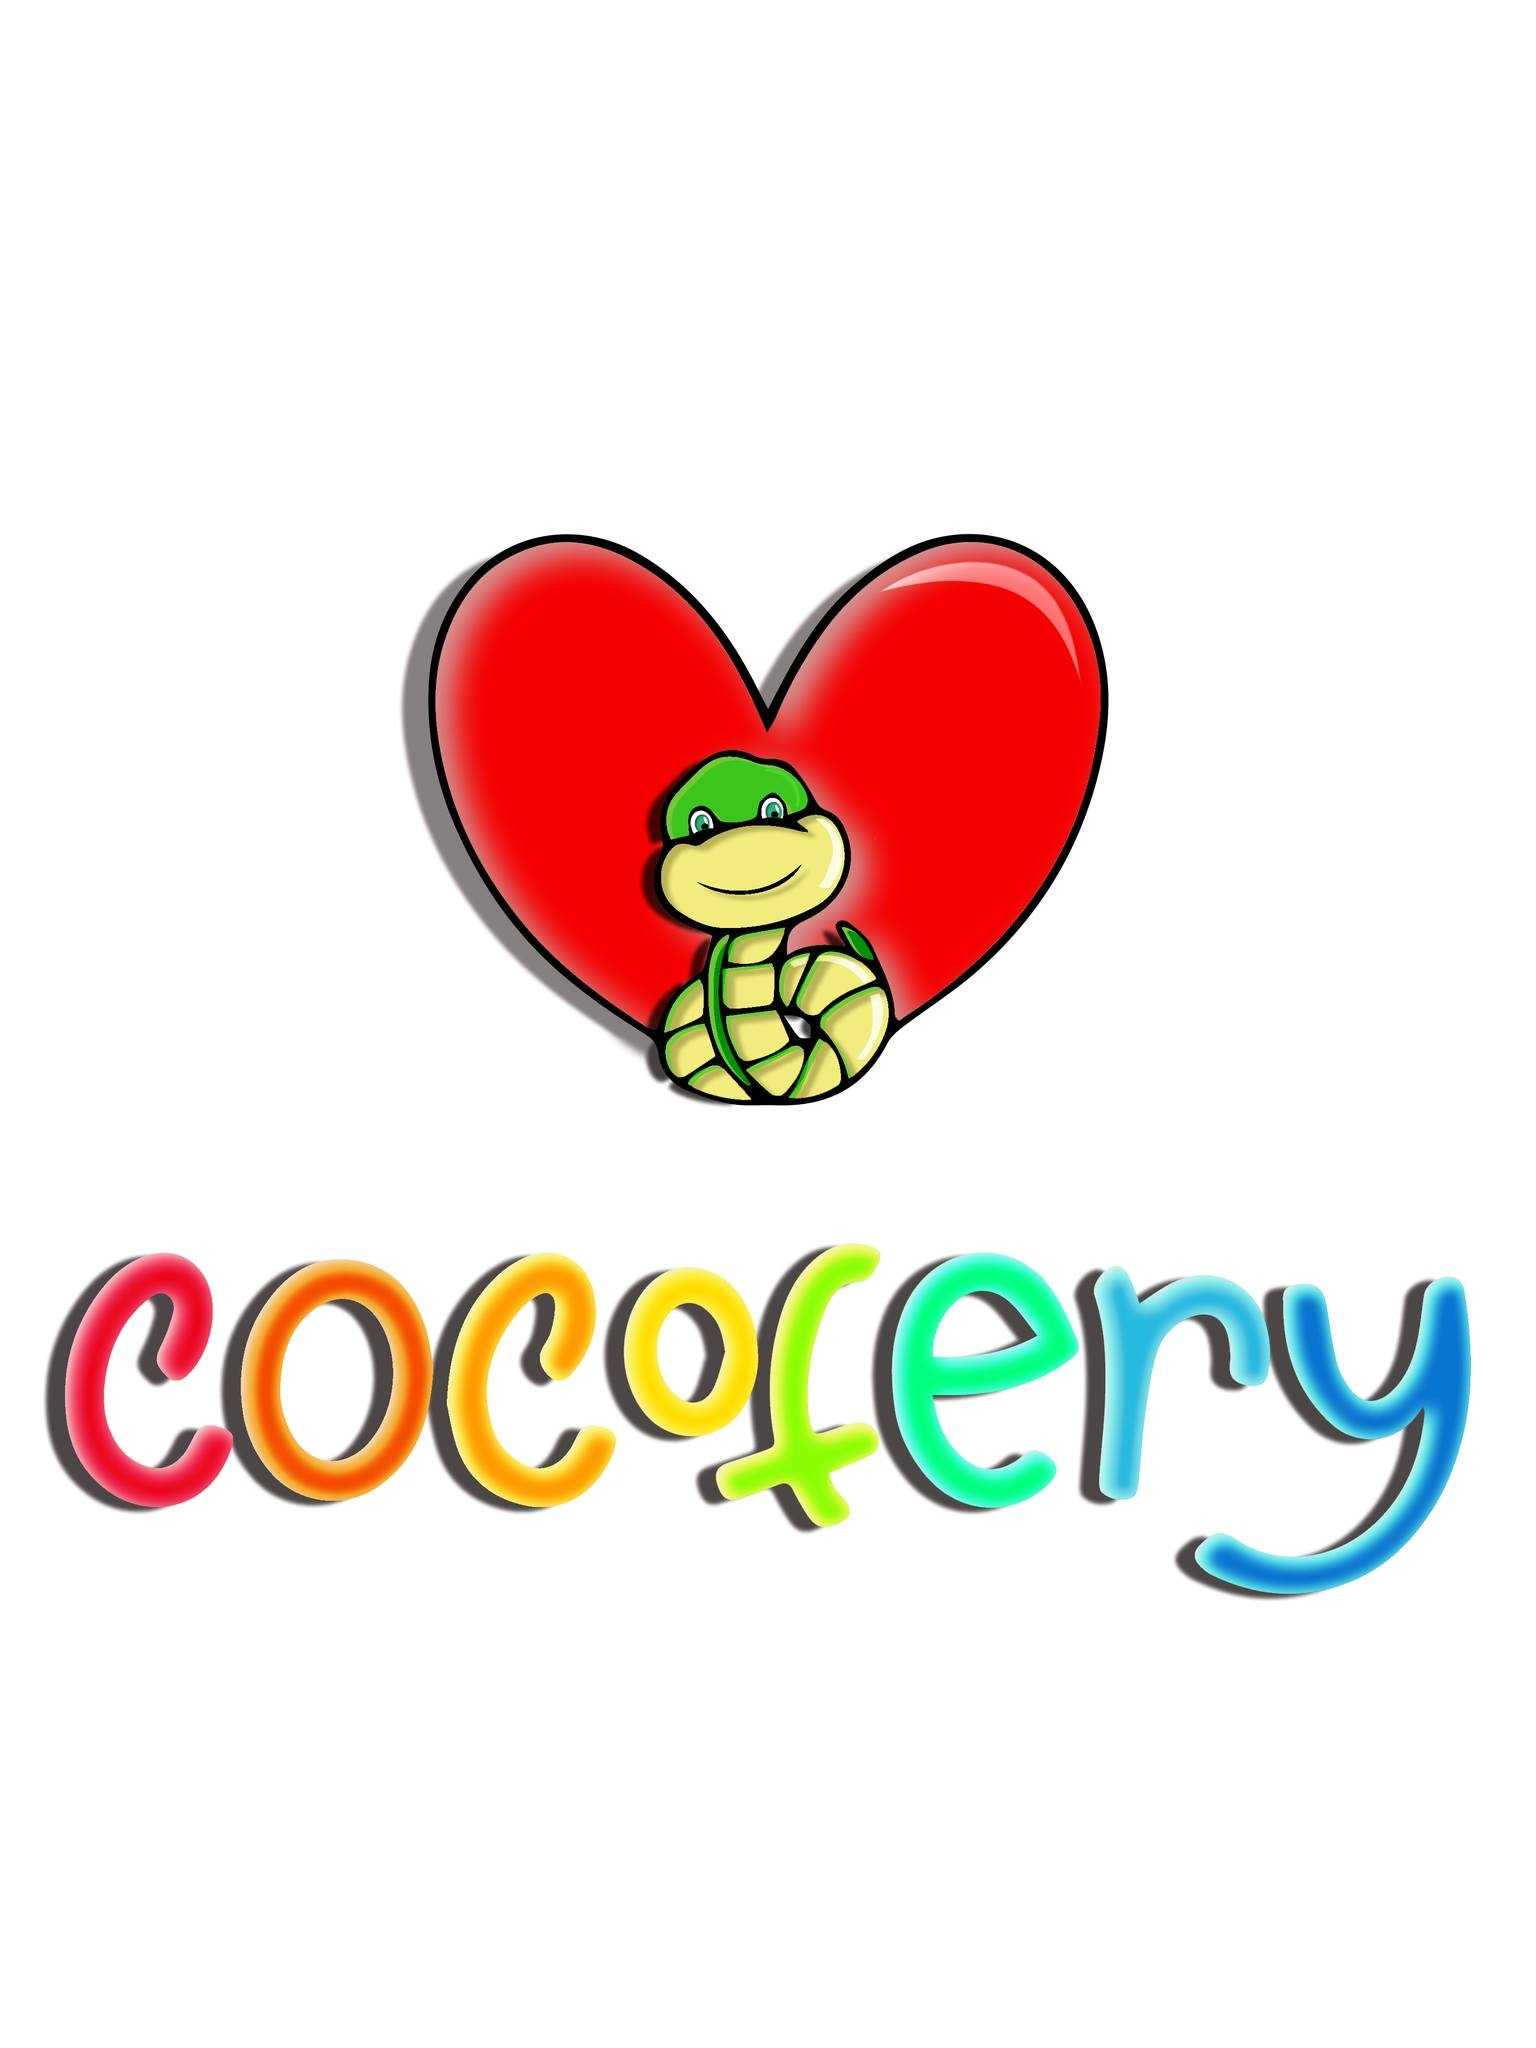 Cocofery